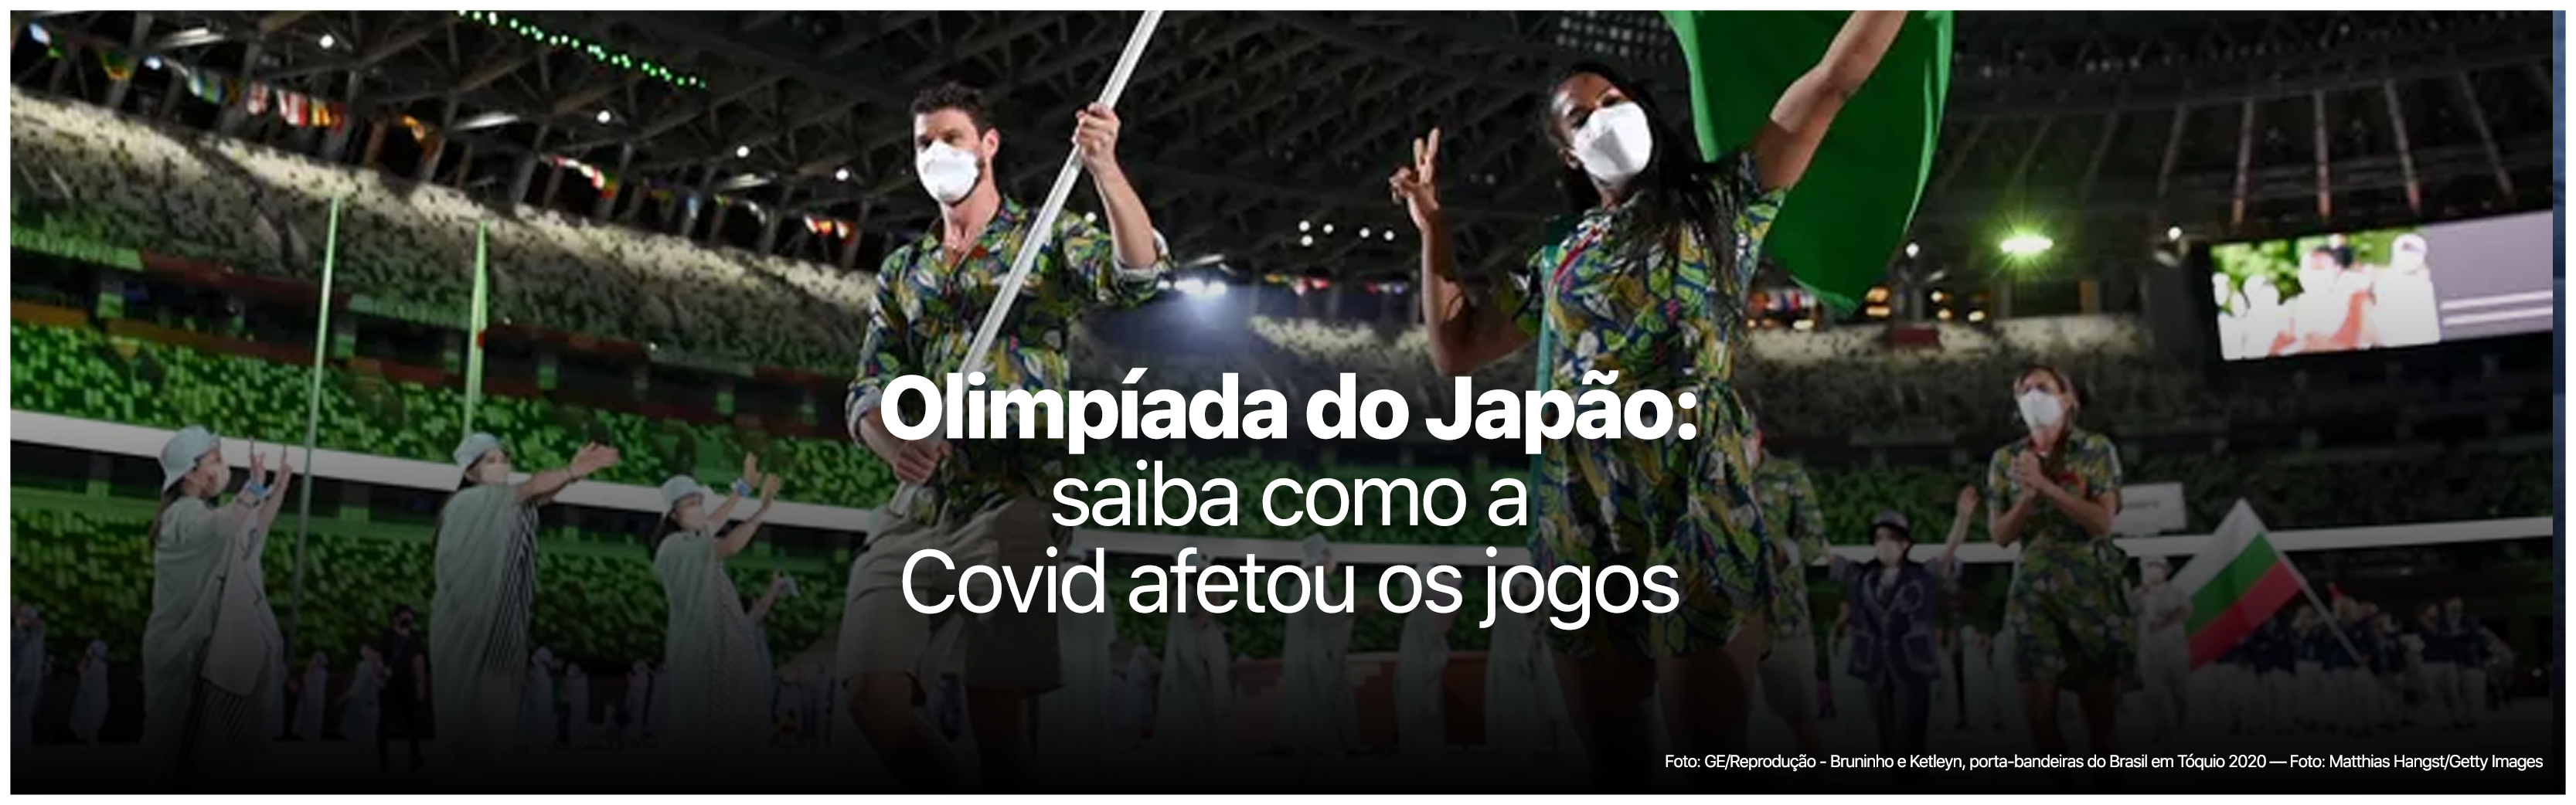 Saiba como serão as Olimpíadas Tóquio 2020 em meio à pandemia de Covid-19